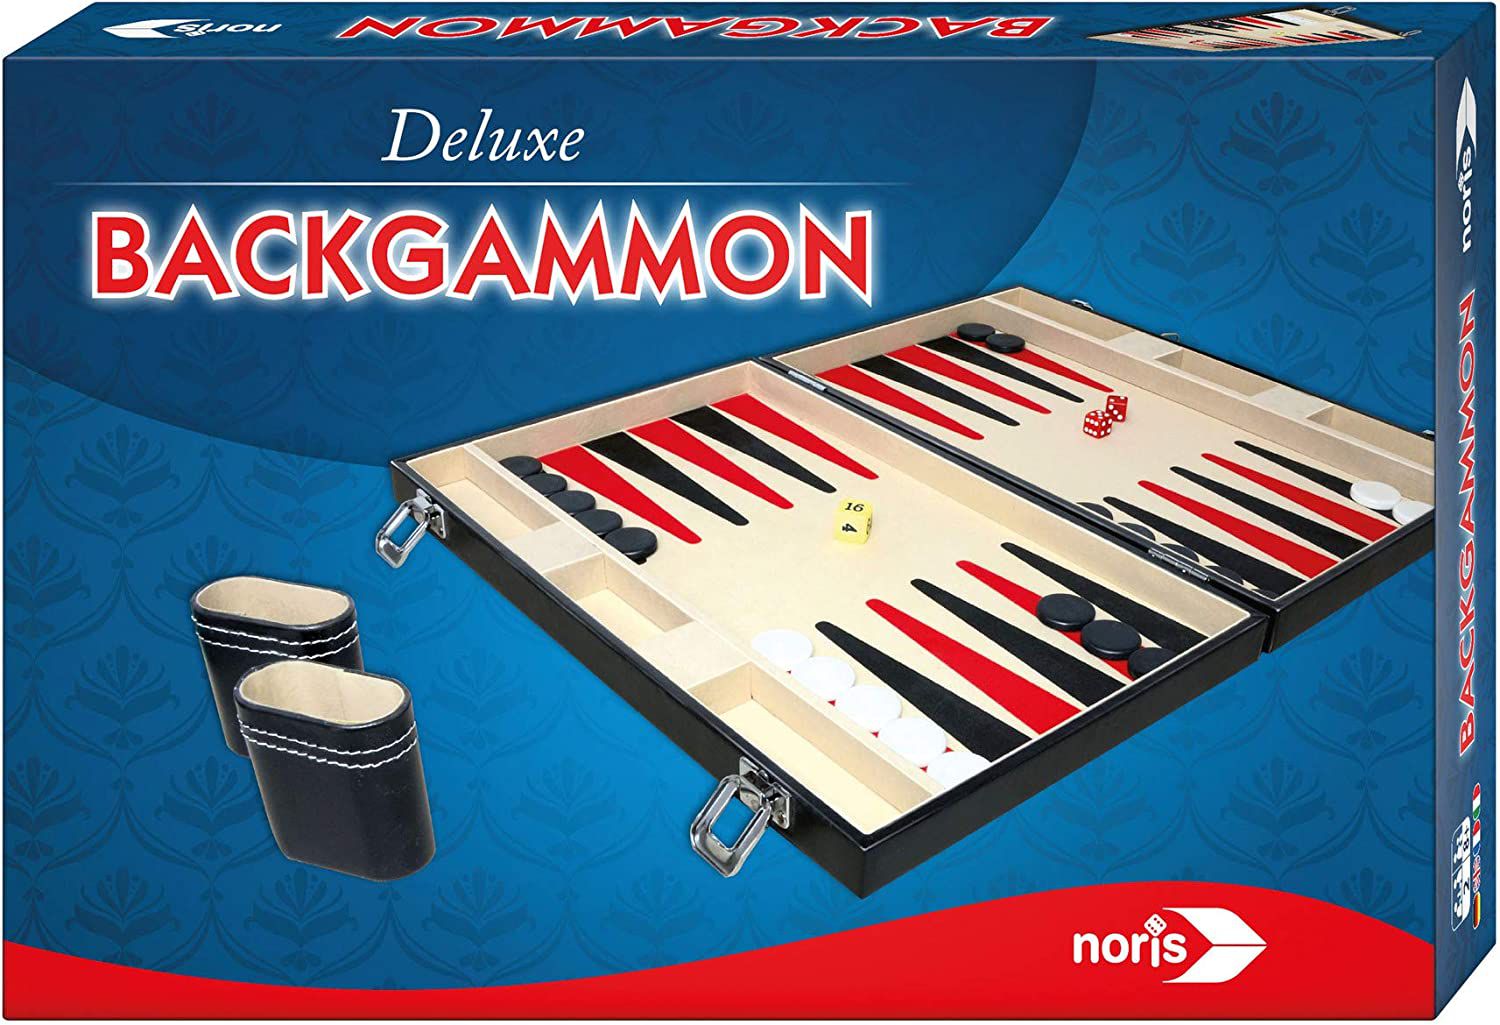 Deluxe Backgammon Koffer für 15,99€ (statt 30€)   Prime